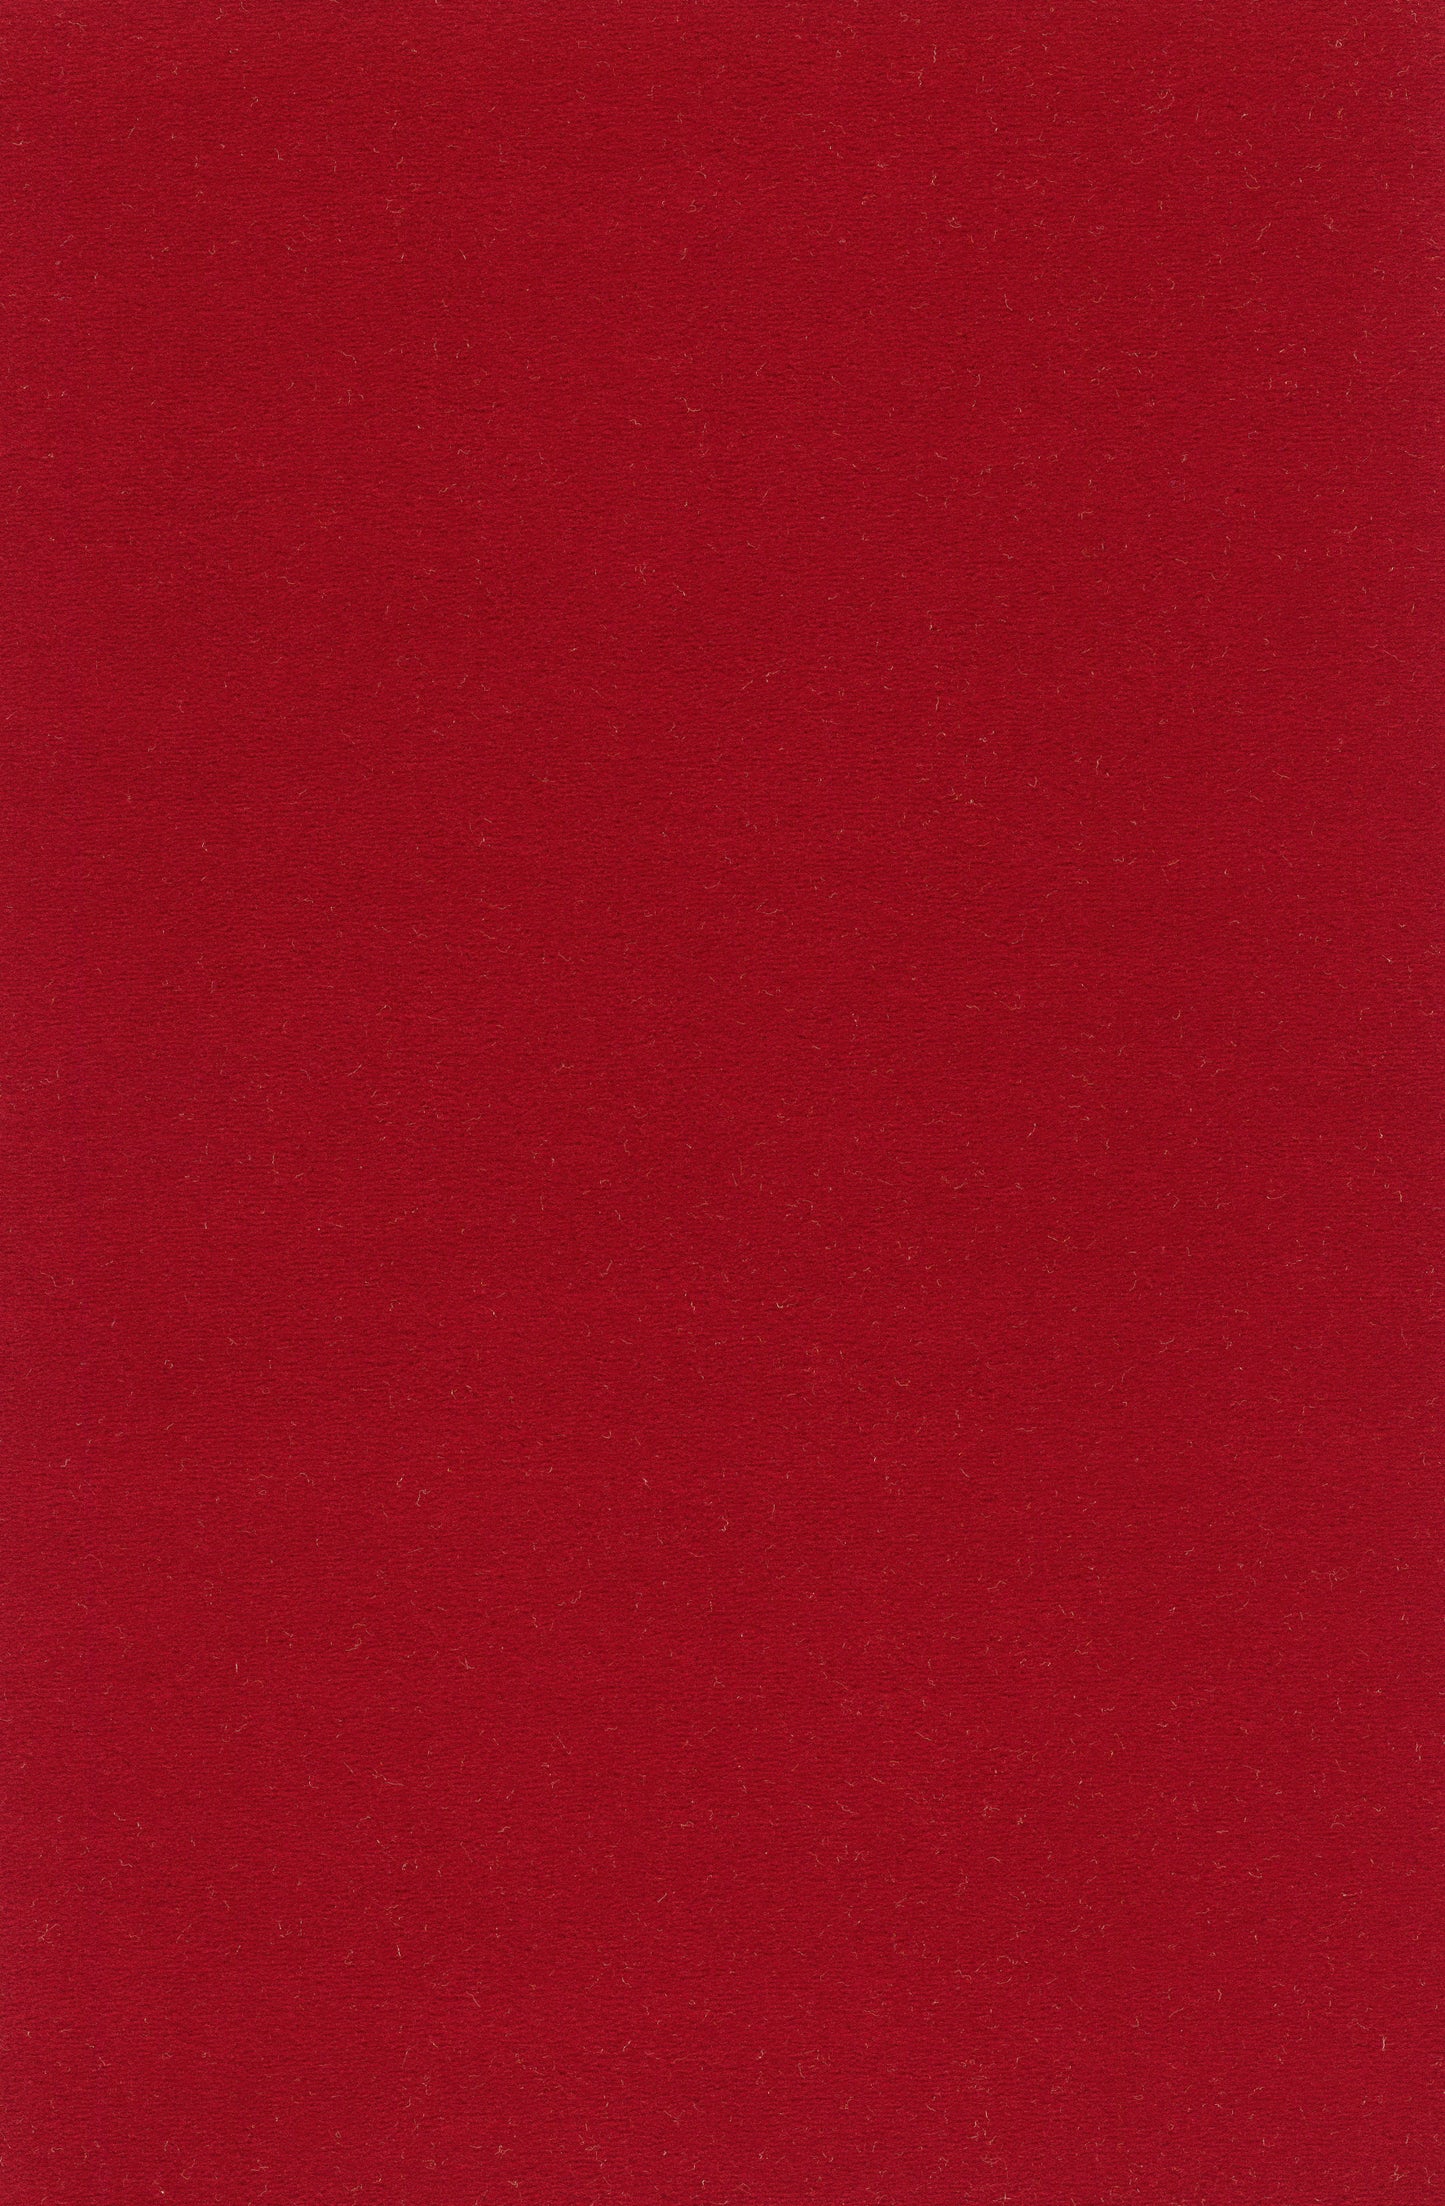 Vorwerk Passion "Modena" Teppichboden - 1L39 Rot